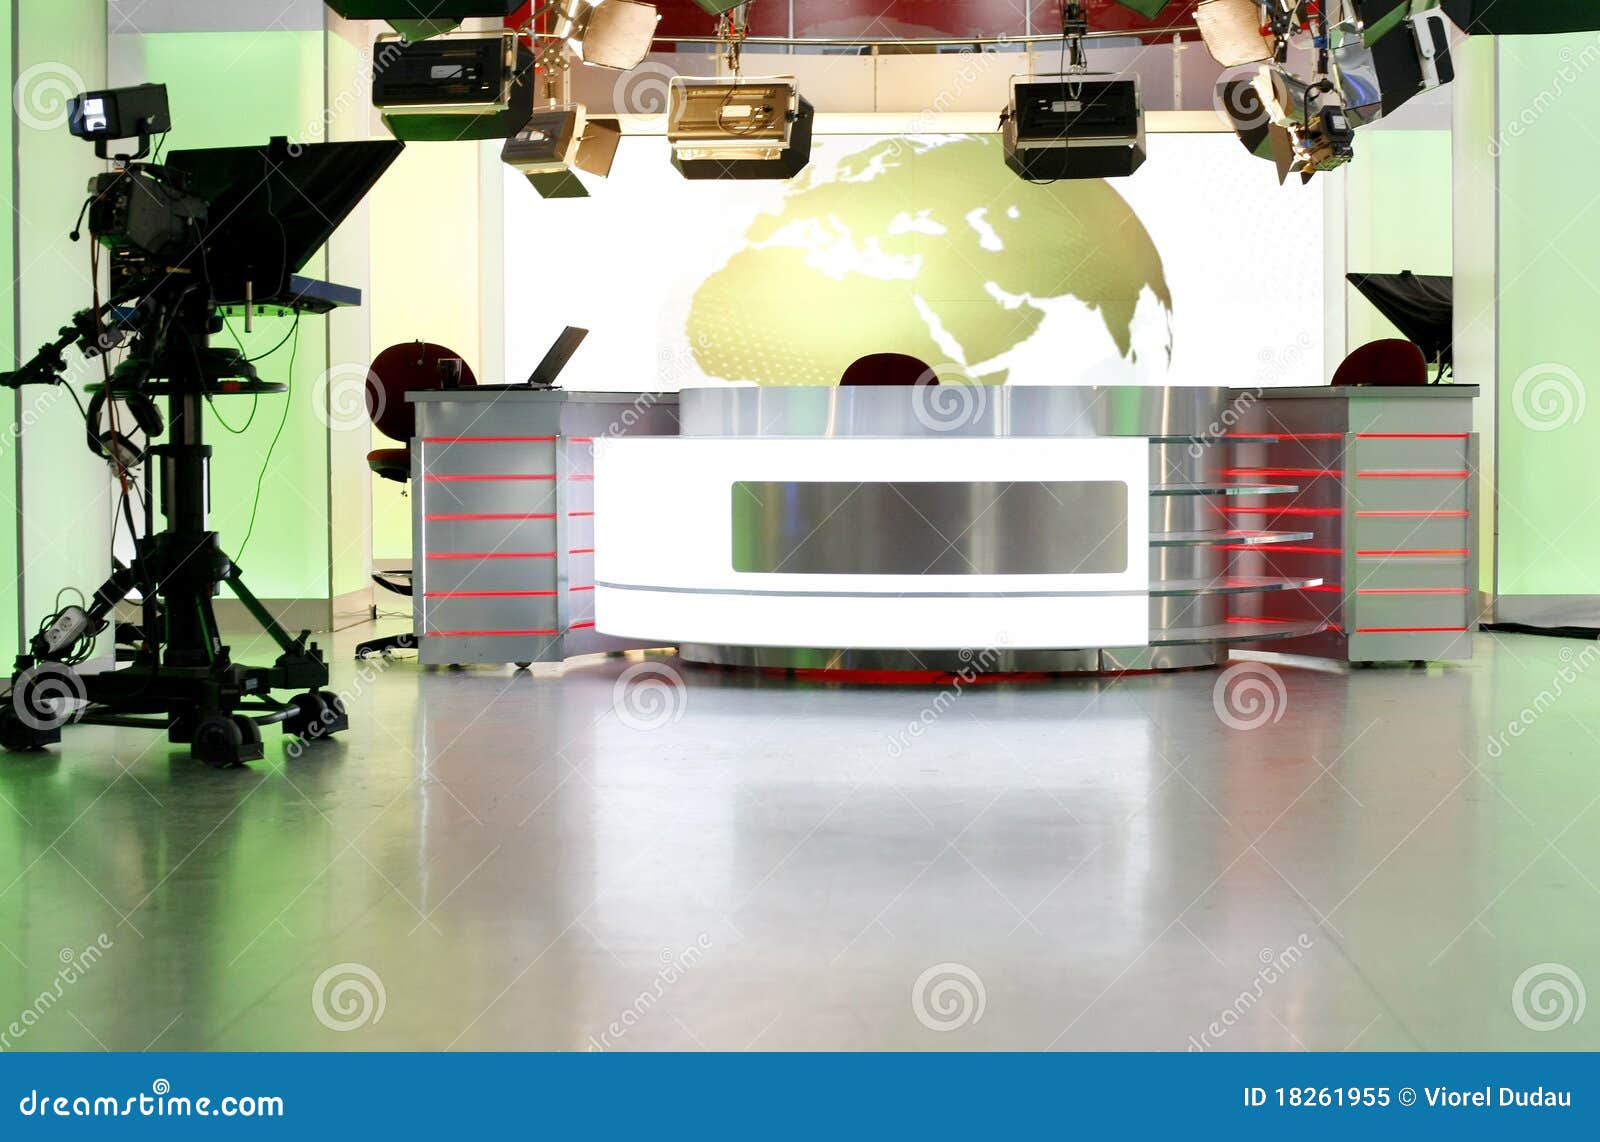 news desk in a television studio